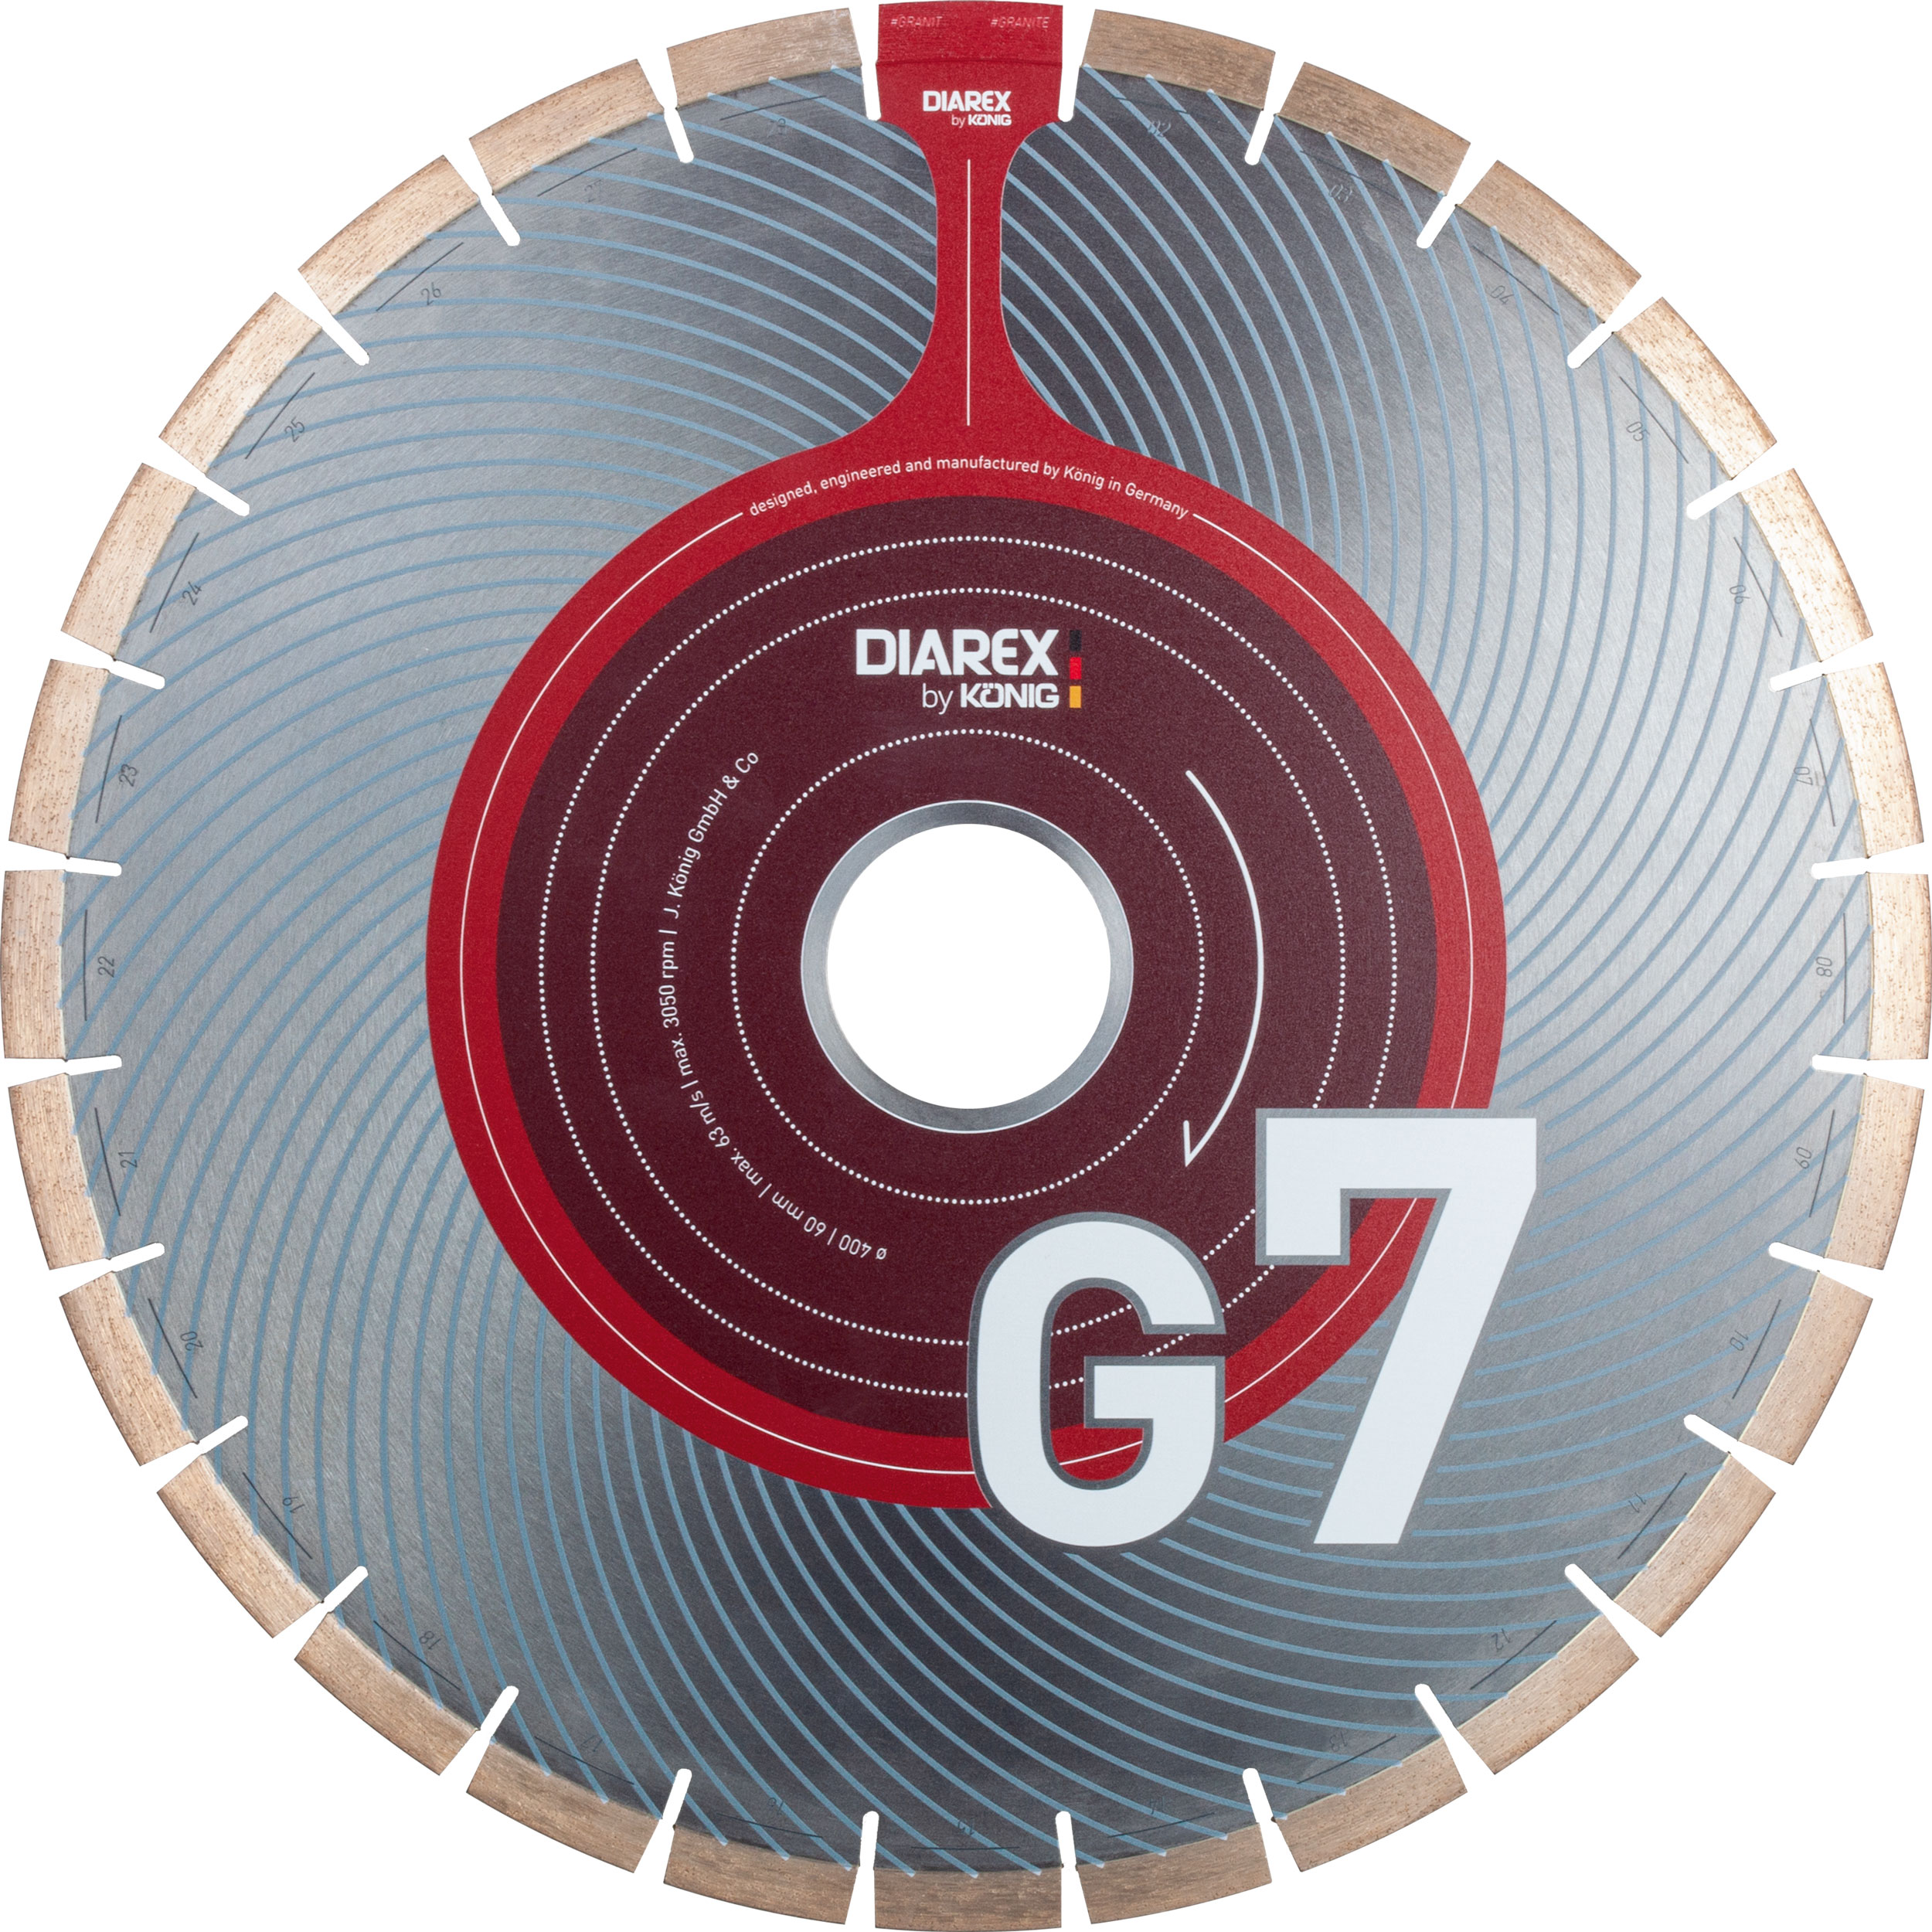 DIAREX Trennscheibe G7 ø 500 mm | Bohrung 60 mm